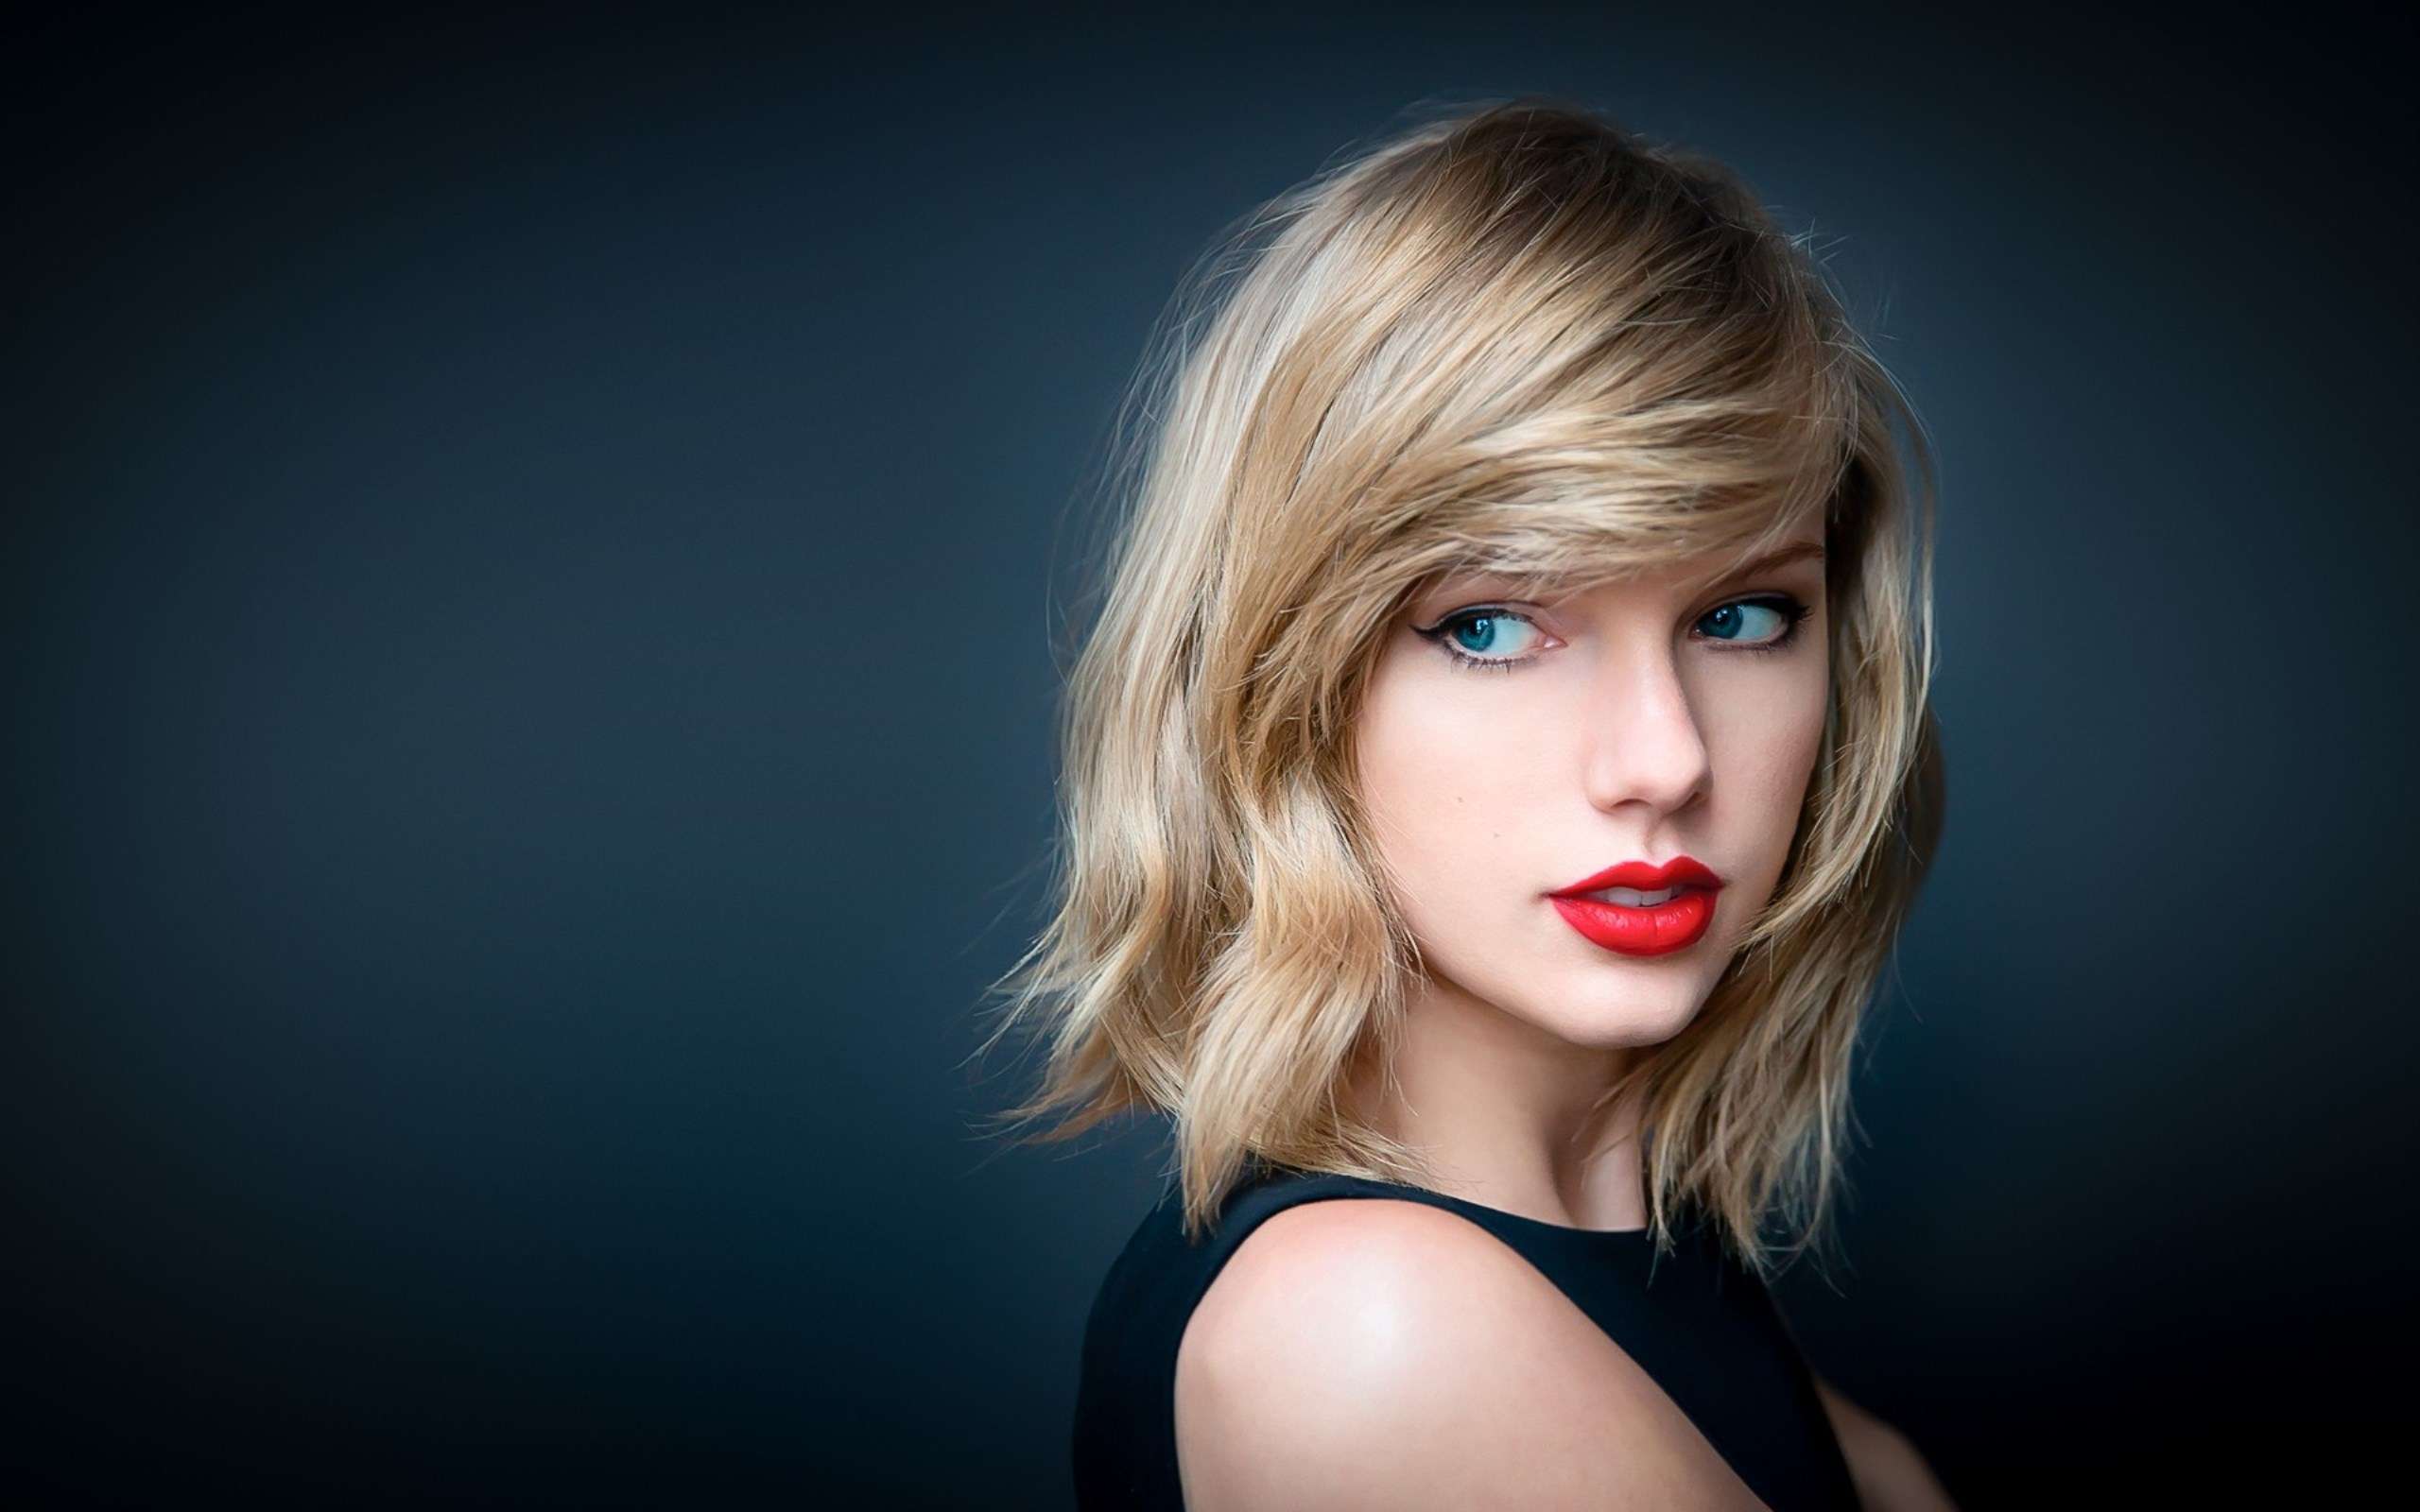 Ca khúc “Look What You Made Me Do” của Taylor Swift thu hút 39 triệu lượt xem ngày đầu lên sóng